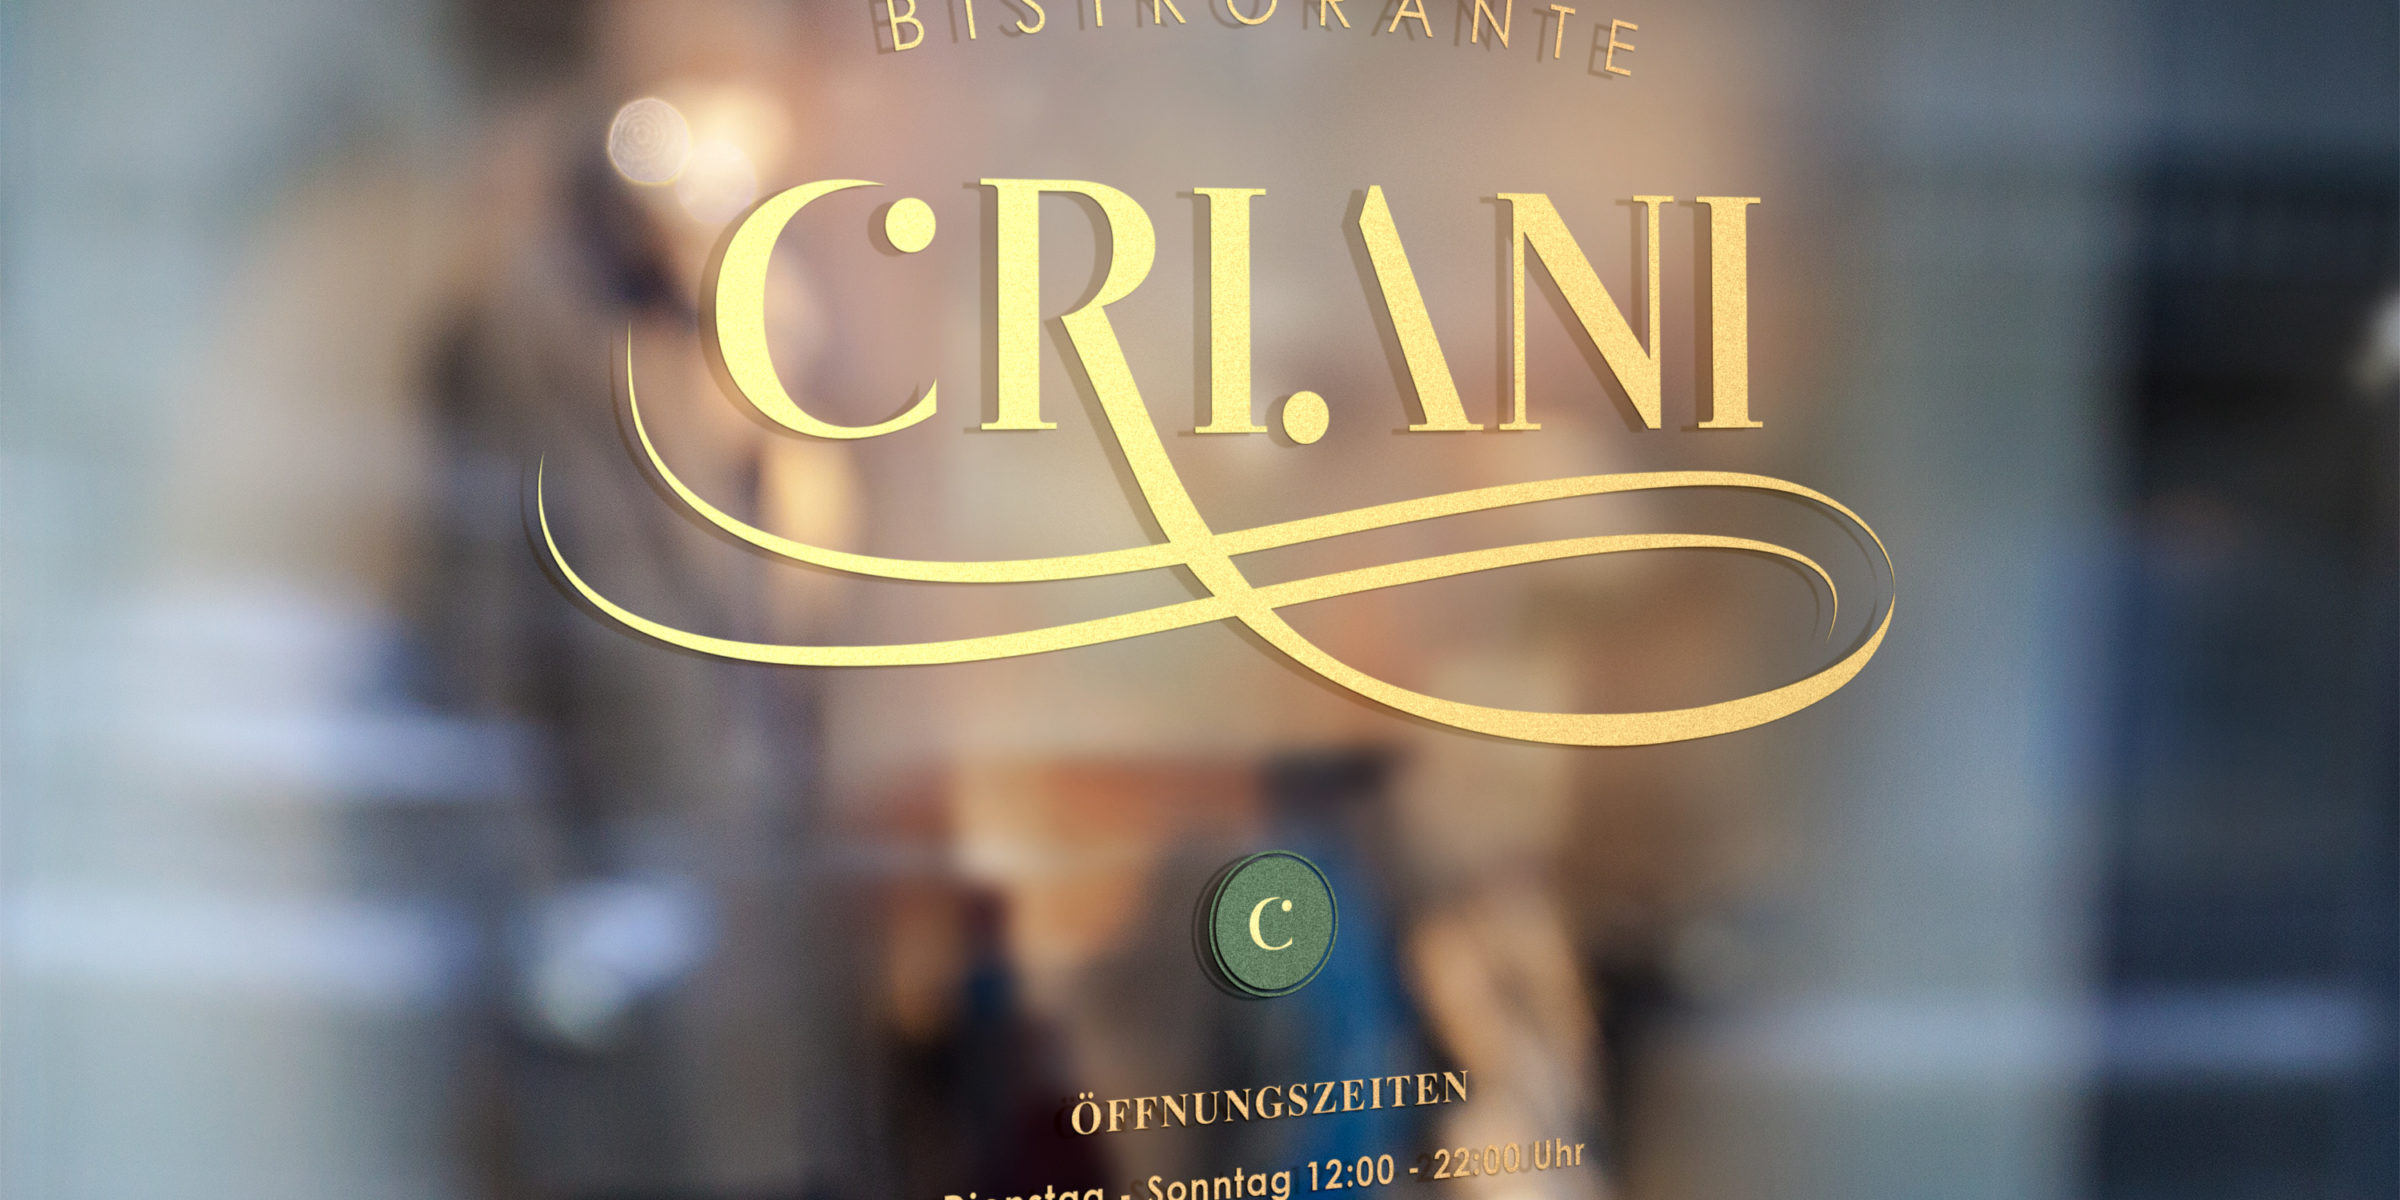 CRIANI restaurant logo/CI development